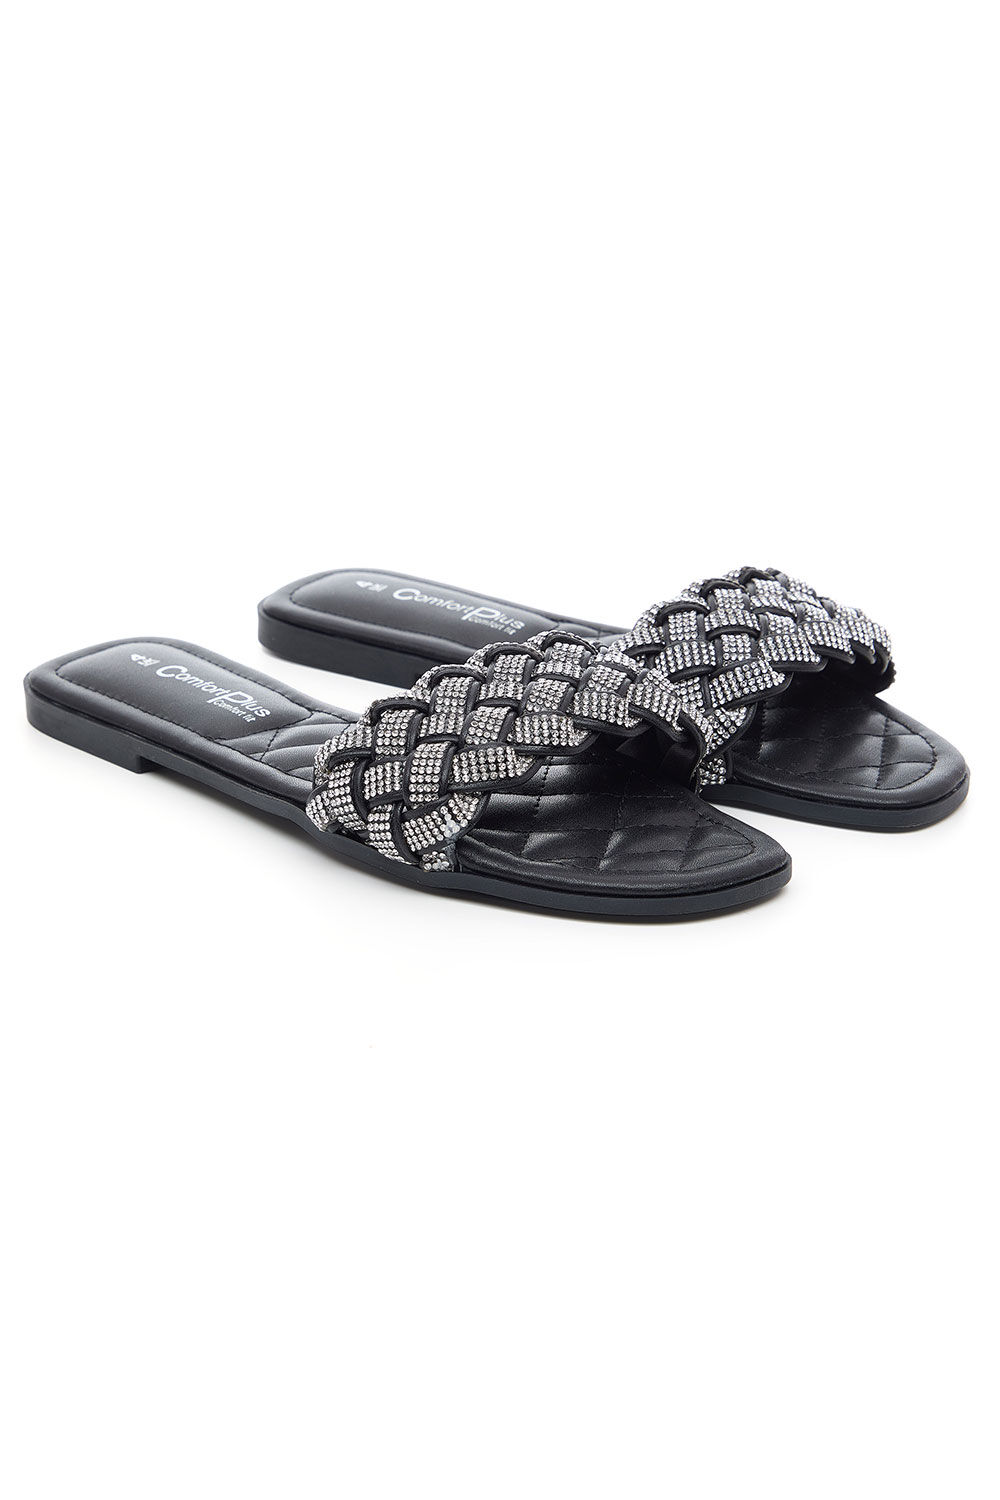 Comfort Plus Black - Diamante Weave Front Band Flat Sandals, Size: 5